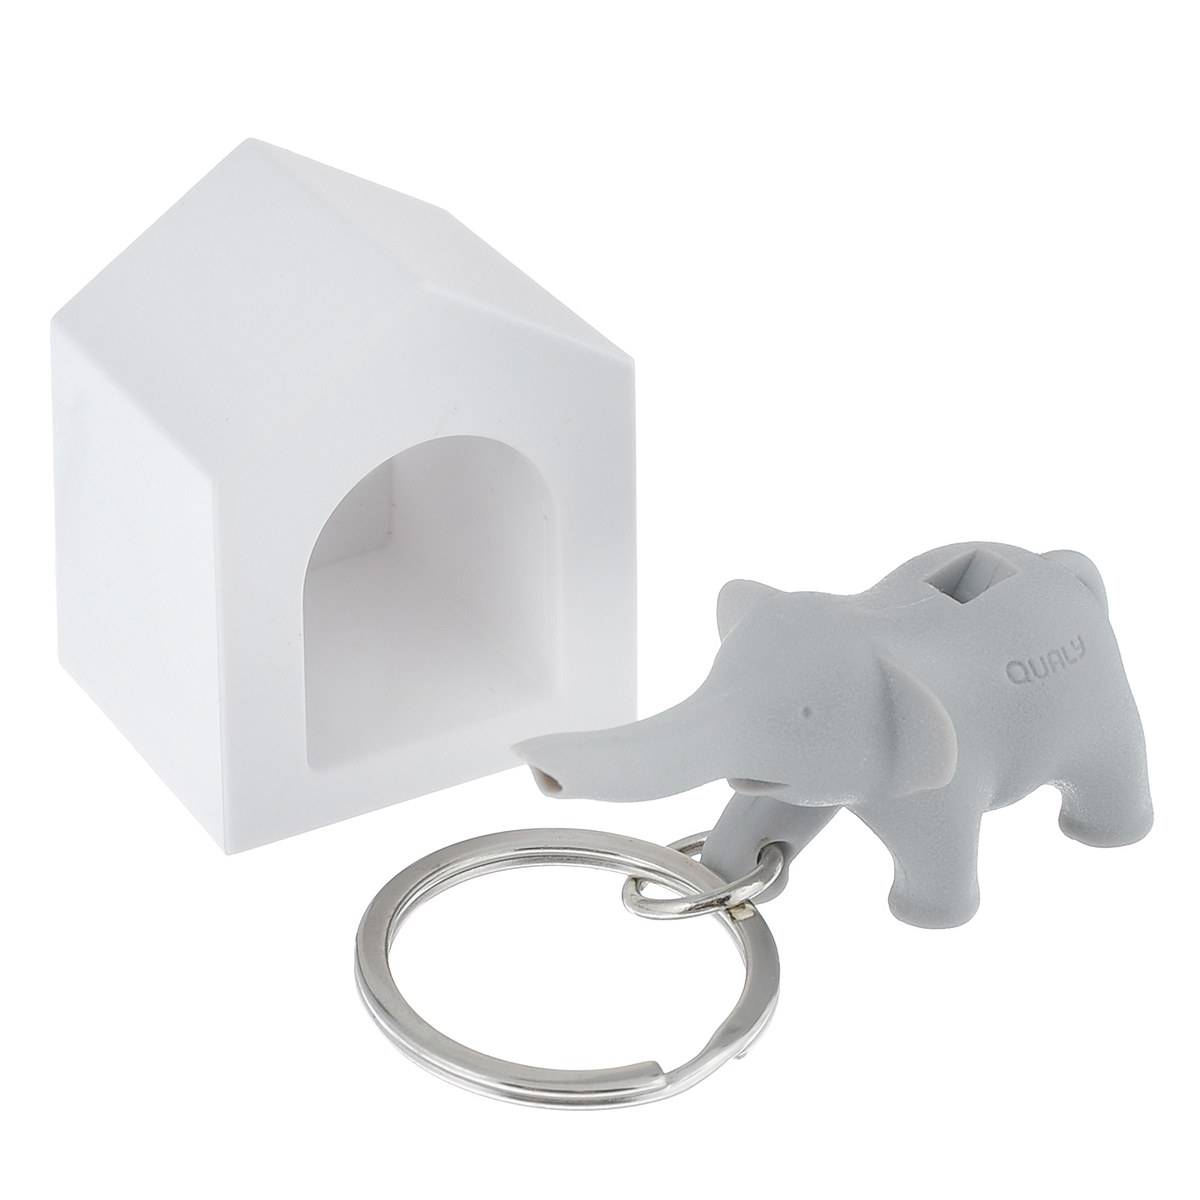 Держатель для ключей Qualy Elephant, цвет: белый, серыйQL10187-GYДержатель для ключей Qualy Elephant - прекрасный аксессуар для дома, который поможет аккуратно хранить ключи. Пусть ваш ключ обретет свое законное место, а заодно и симпатичный брелок в виде слоника, который крепится к кольцу на ключах. Он так же является свистком, вы всегда сможете пошуметь или позвать на помощь в случае опасности, а также оповестить о своем приходе. Прикрепите домик-держатель возле входной двери, и вы всегда будете знать, где ваш ключ. А если завести отдельный комплект для каждого члена семьи, при входе в квартире сразу поймете, кто уже дома. Держатель крепится к стене на специальный надежный скотч (в комплекте), либо вешается на шуруп. Размер слоника: 2,5 см х 5,2 см х 2,5 см. Размер домика: 3,5 см х 3 см х 4 см.